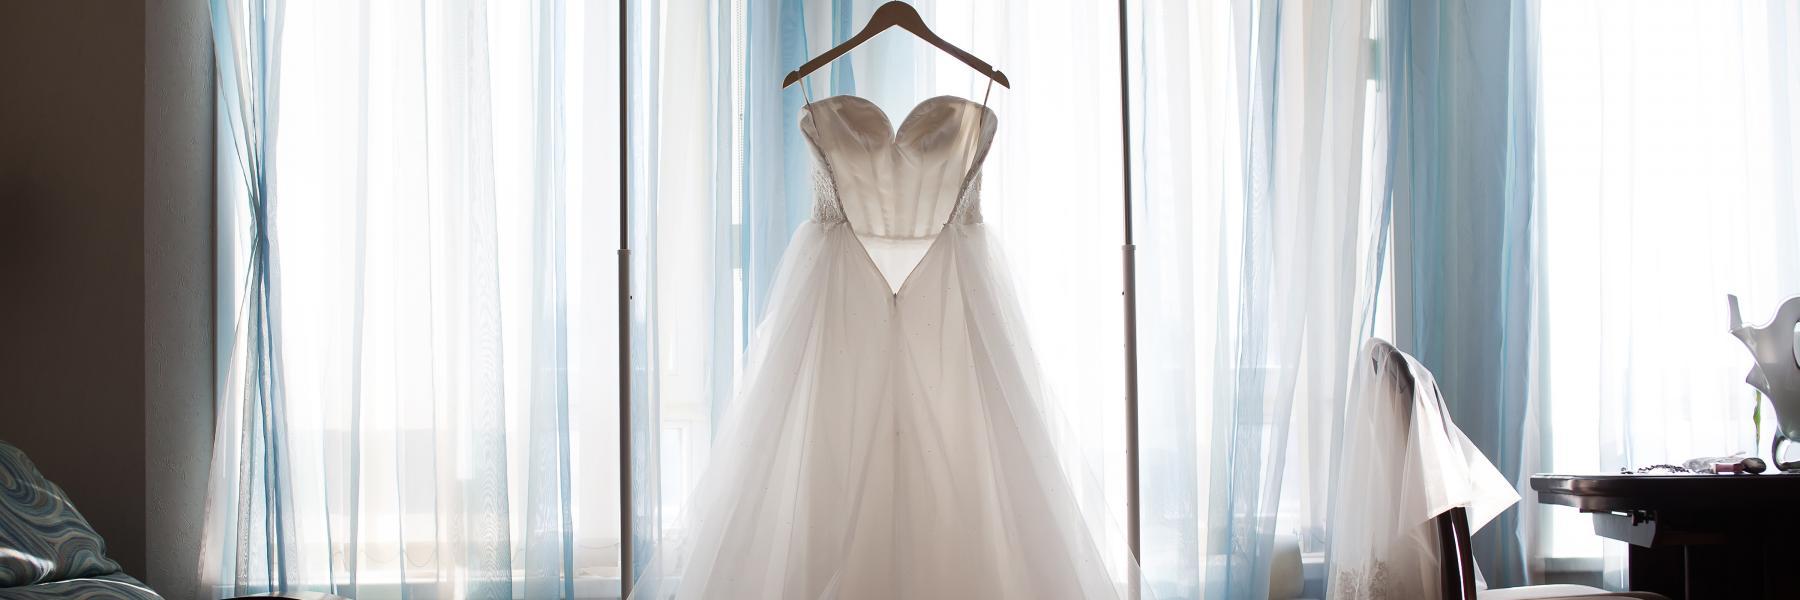 تفسير حلم لبس فستان الزفاف للعزباء